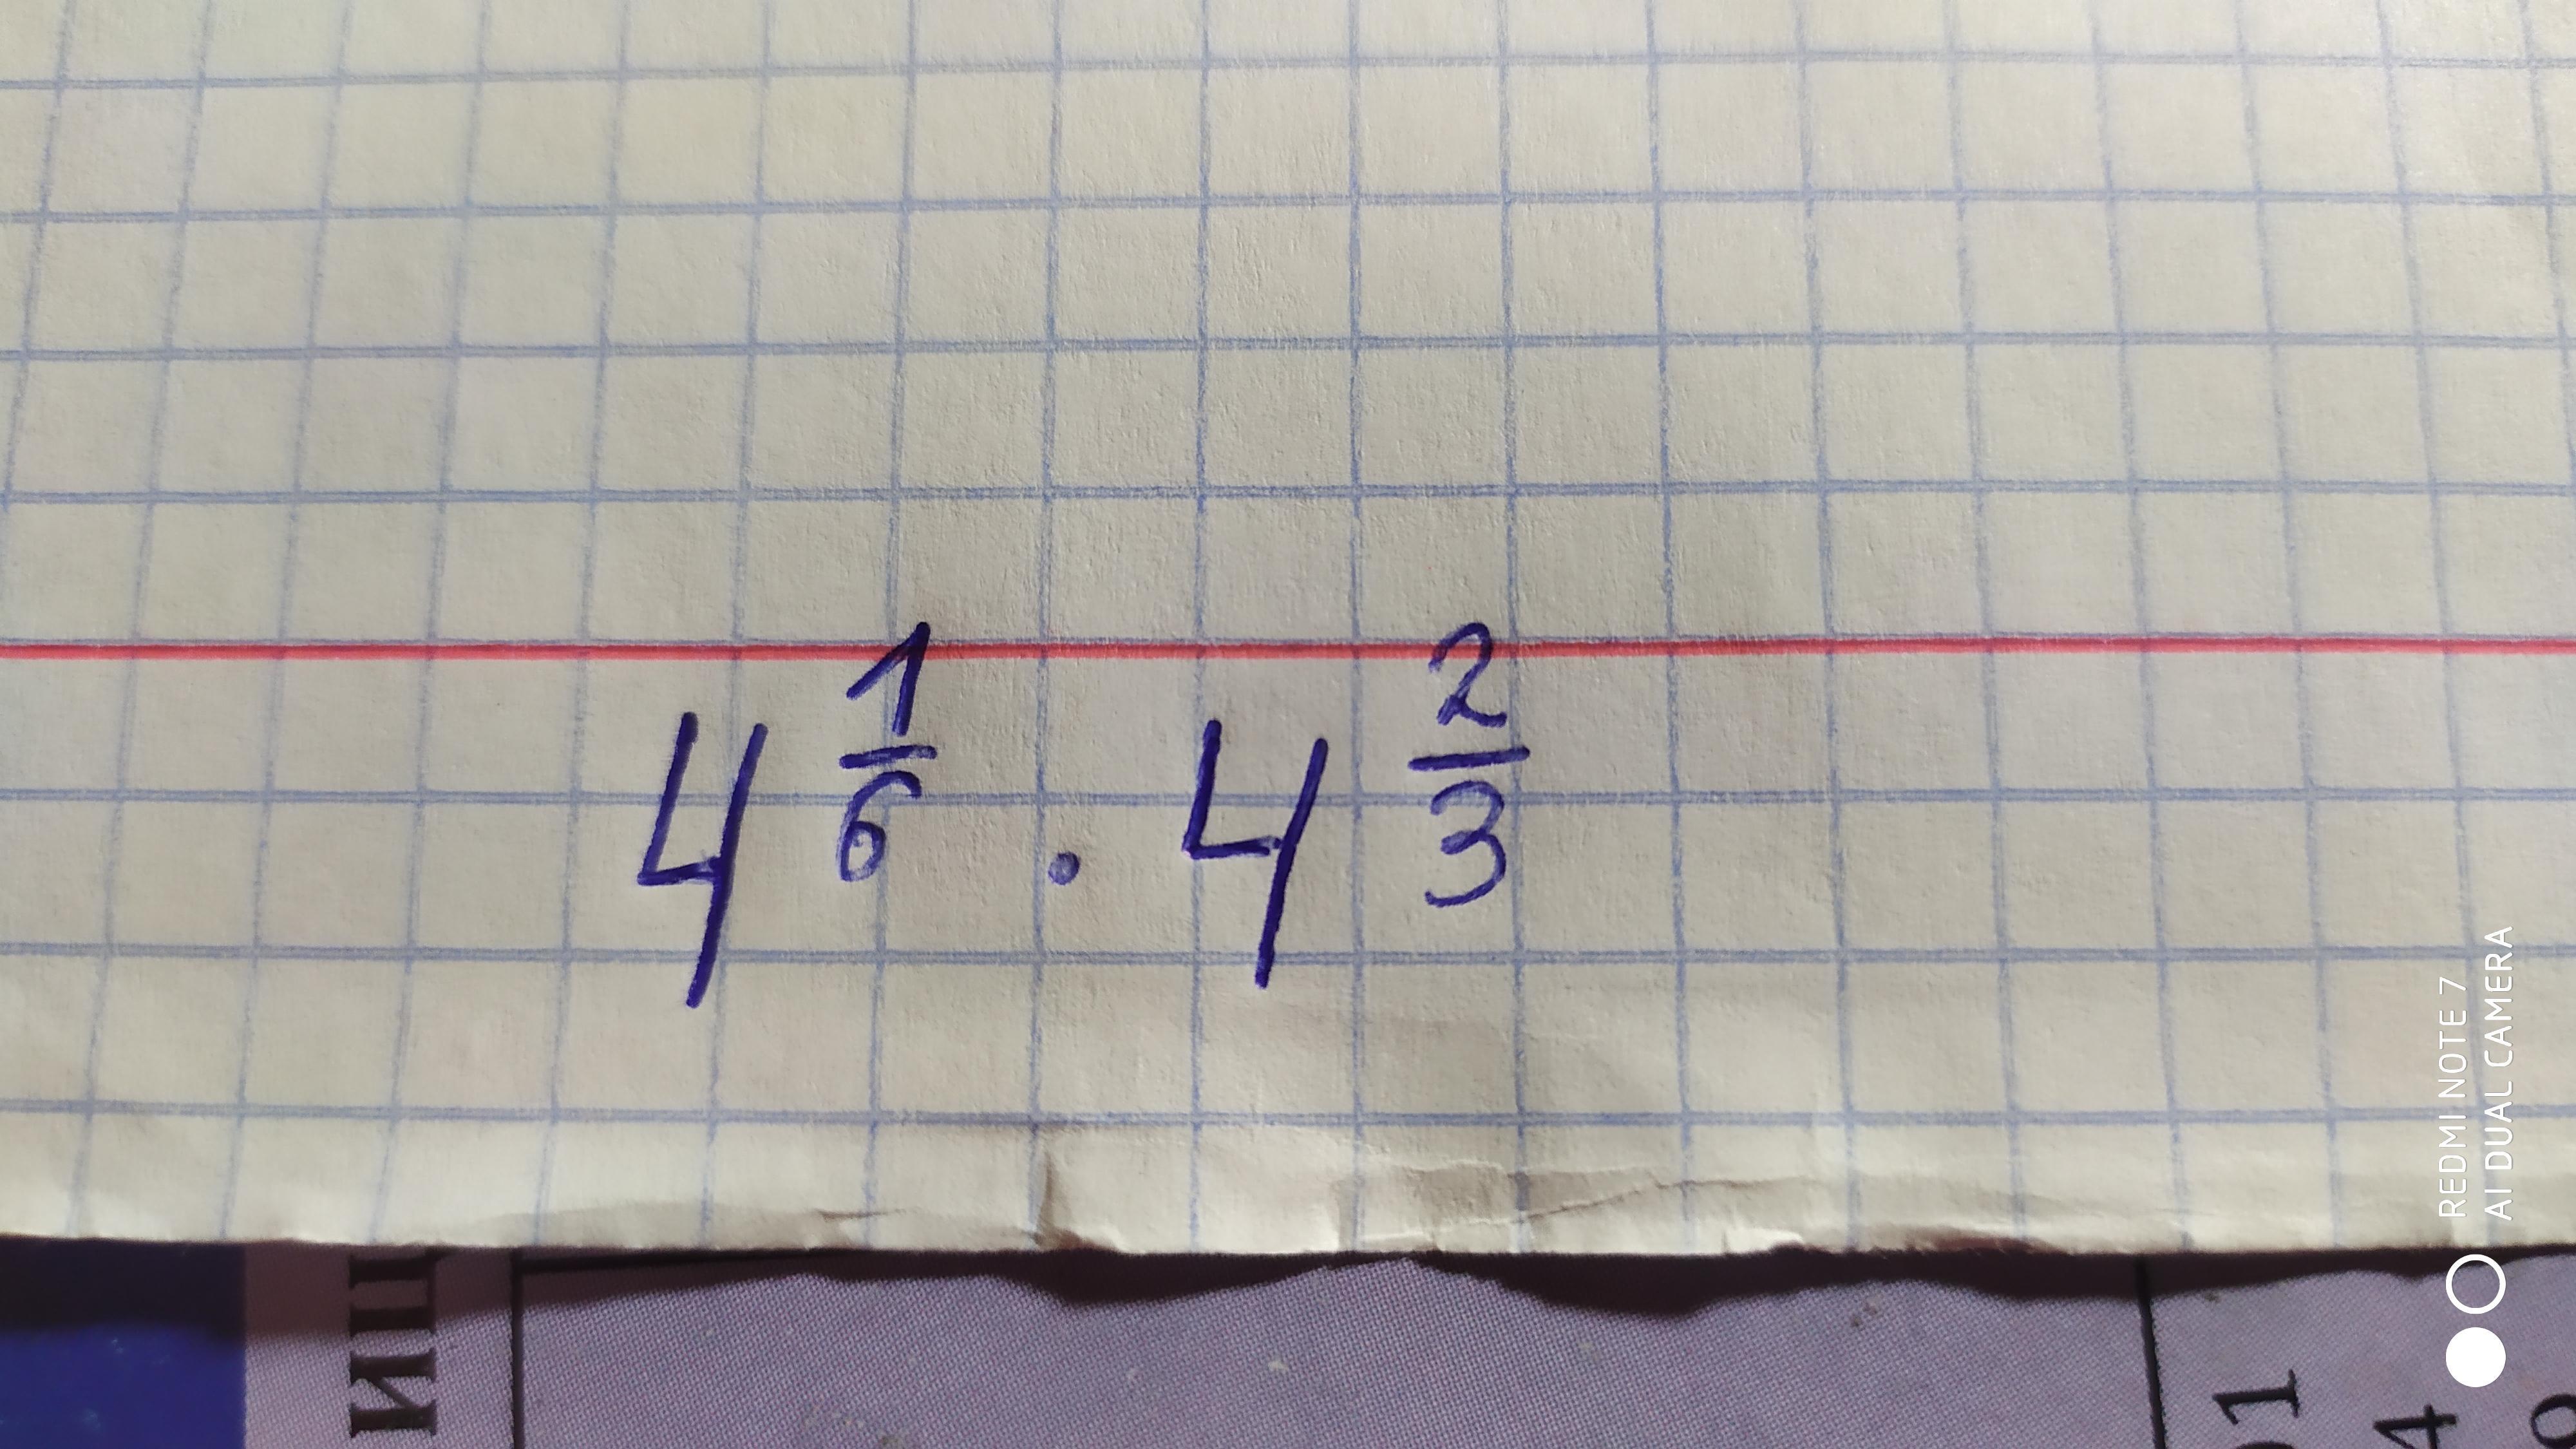 X 6 умножить на 5. 4х умножить 6х15 4. 35 Умножить на 6. Корень 15 делить на 4.